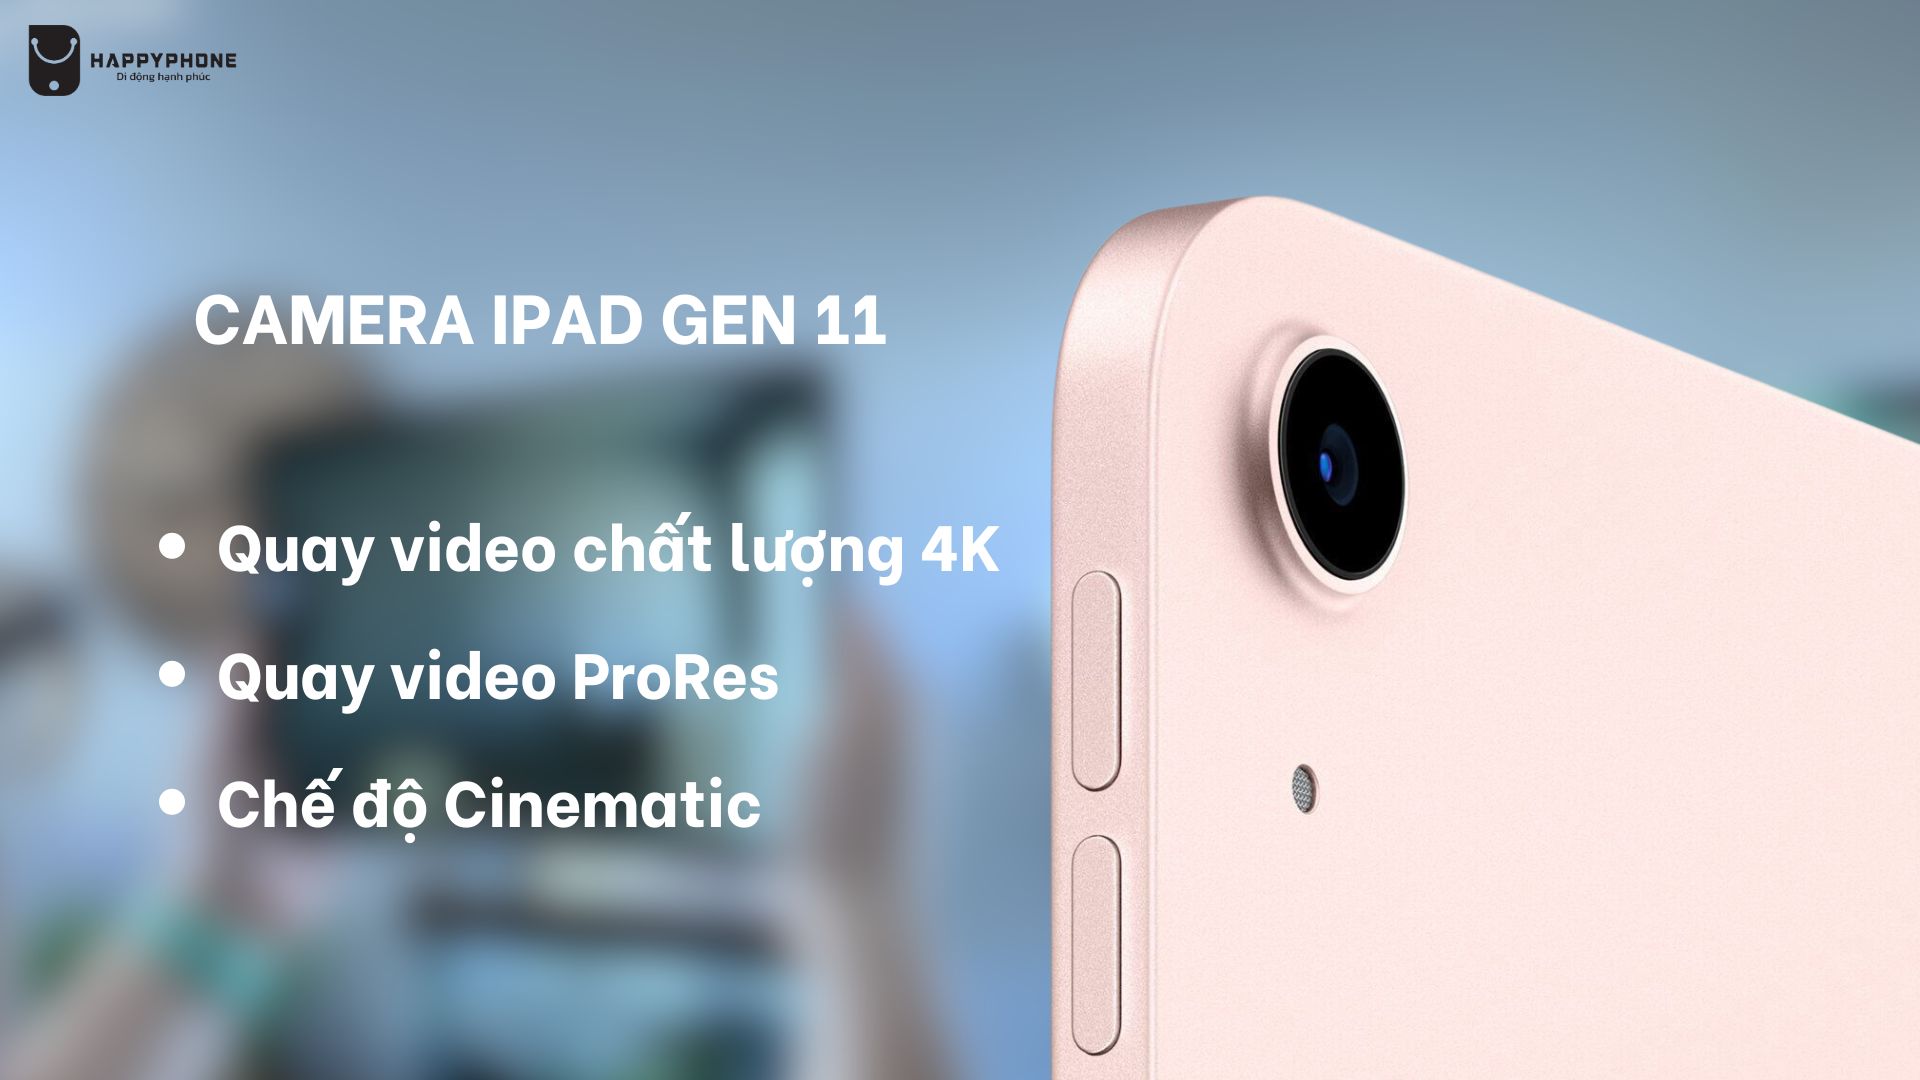 iPad Gen 11 mang đến khả năng quay video chuyên nghiệp hơn